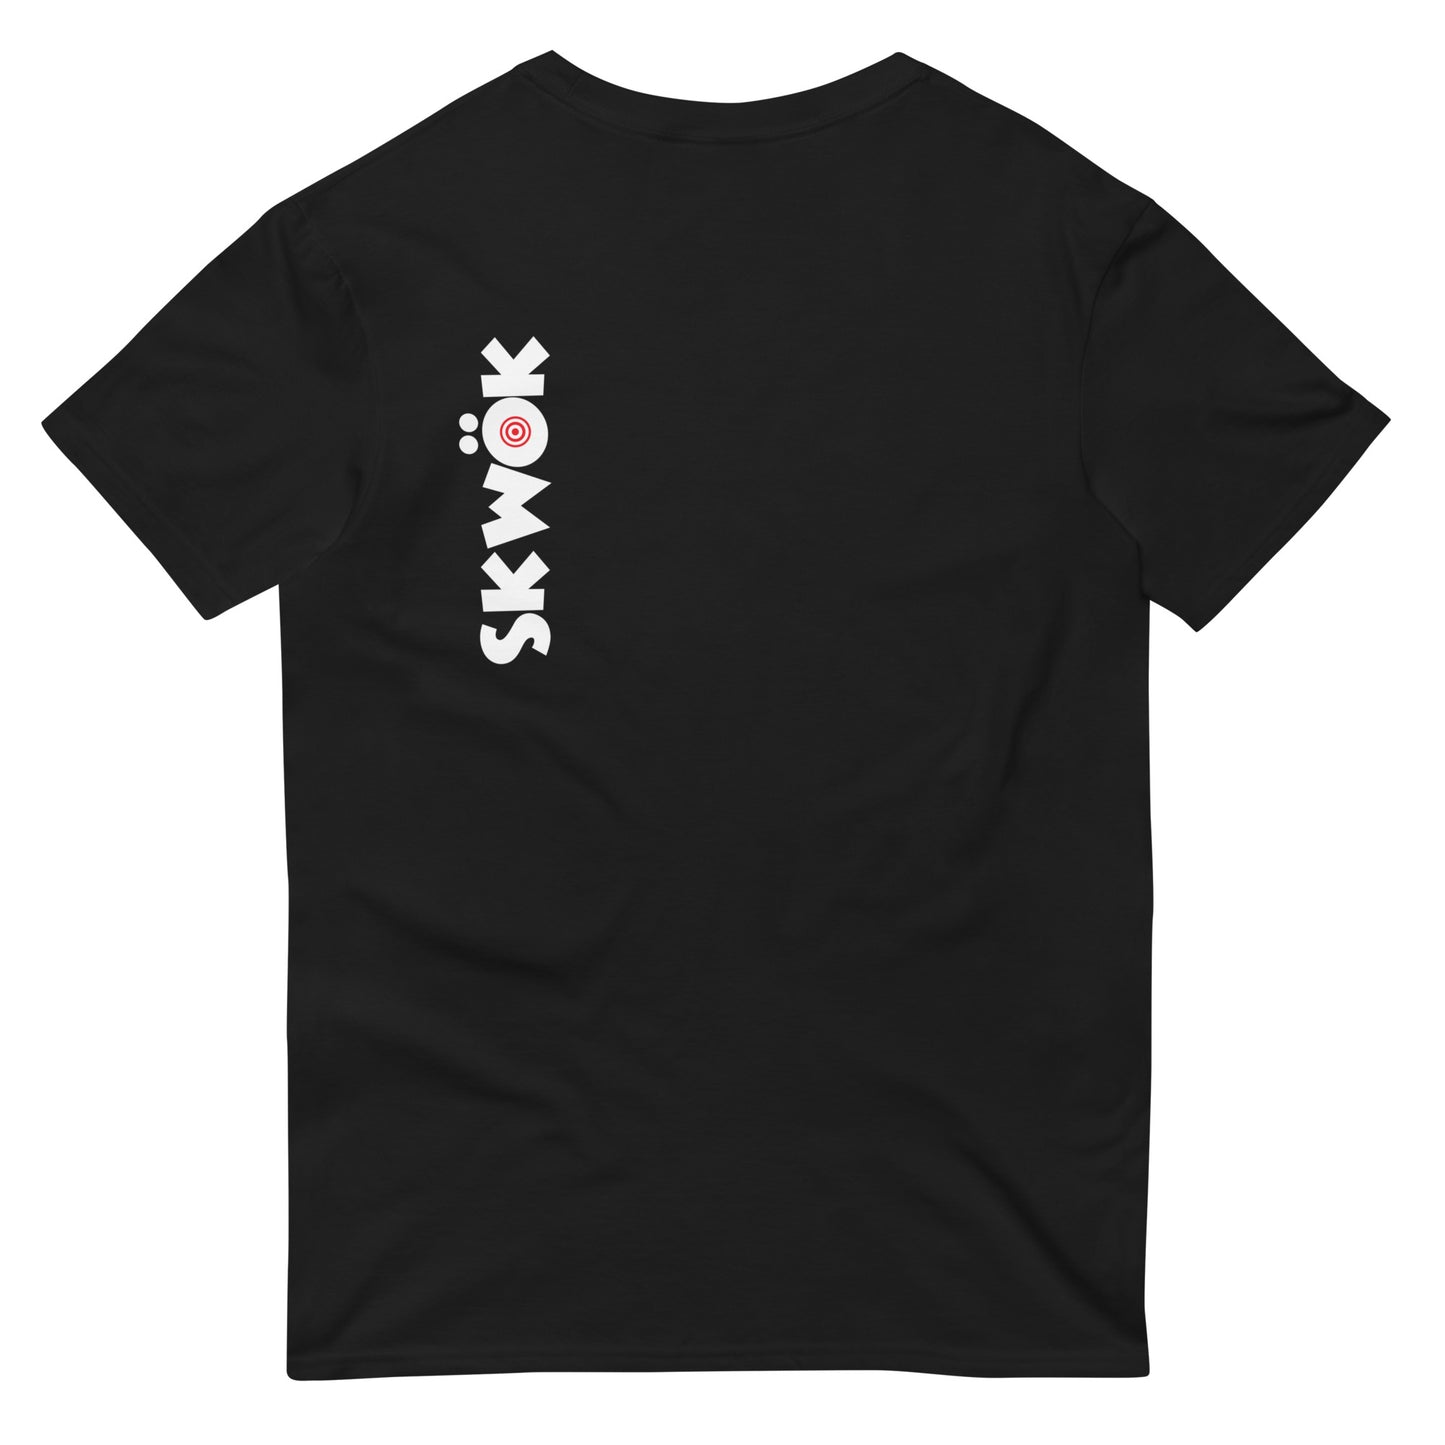 Skwok Brand / #16 / T-shirt / Target Logo